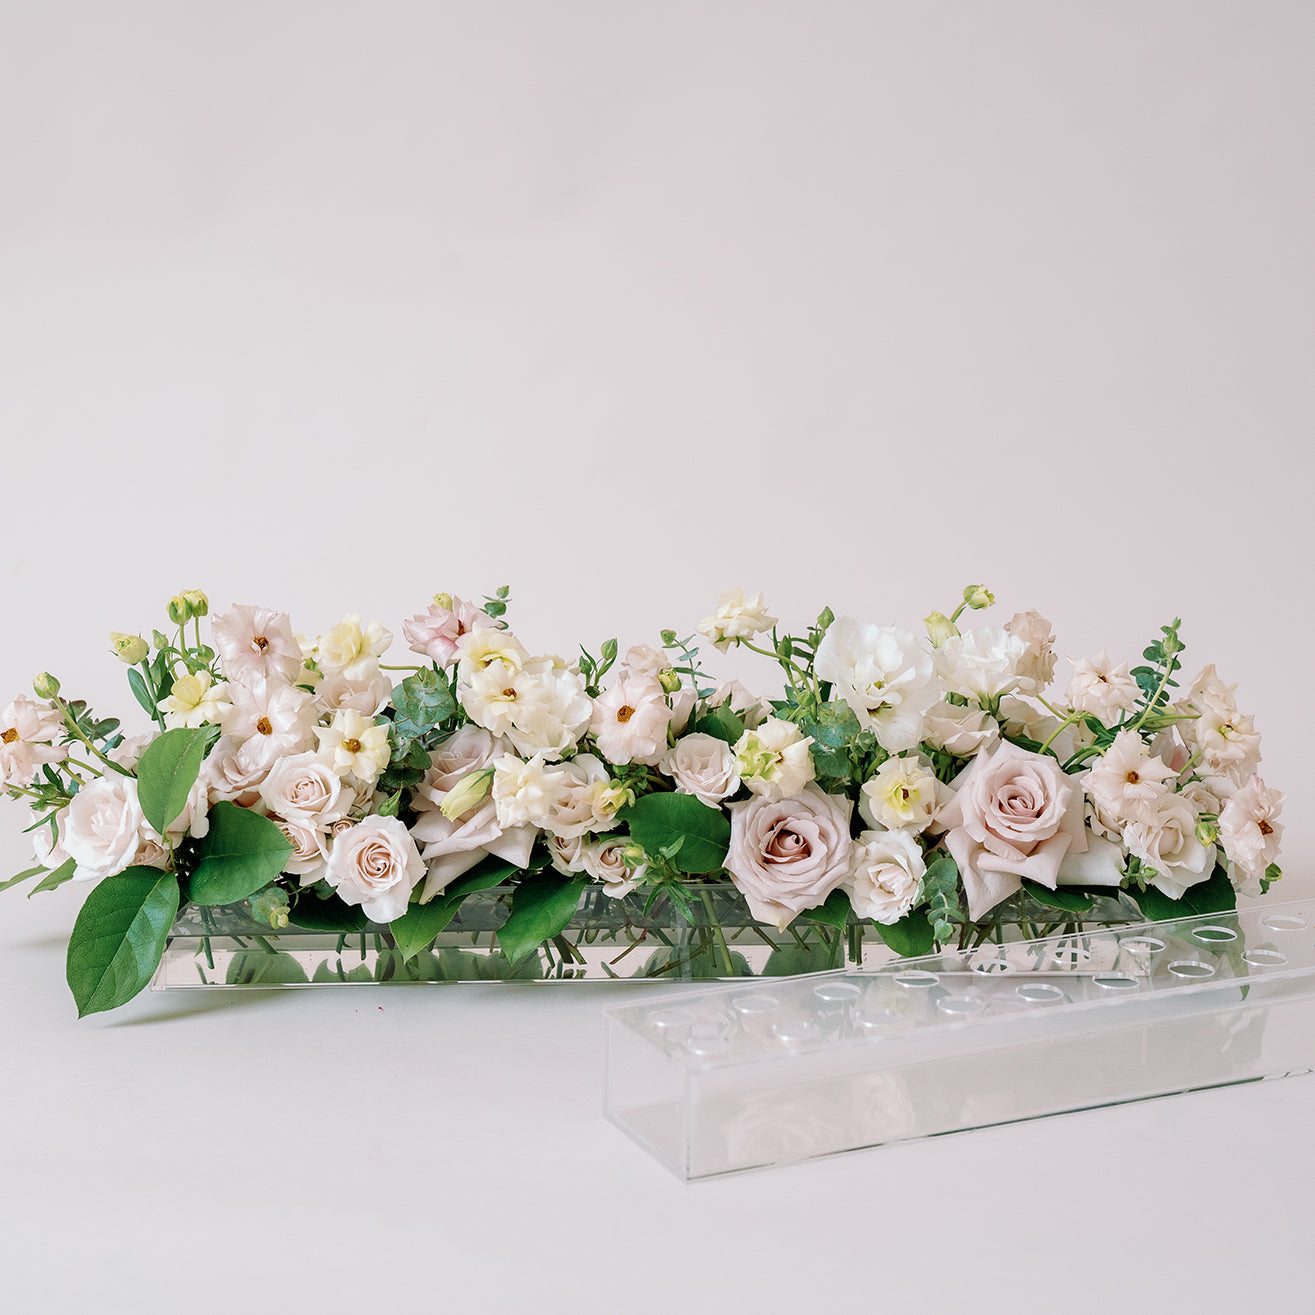 rectangular Acrylic flower tray vase with holes